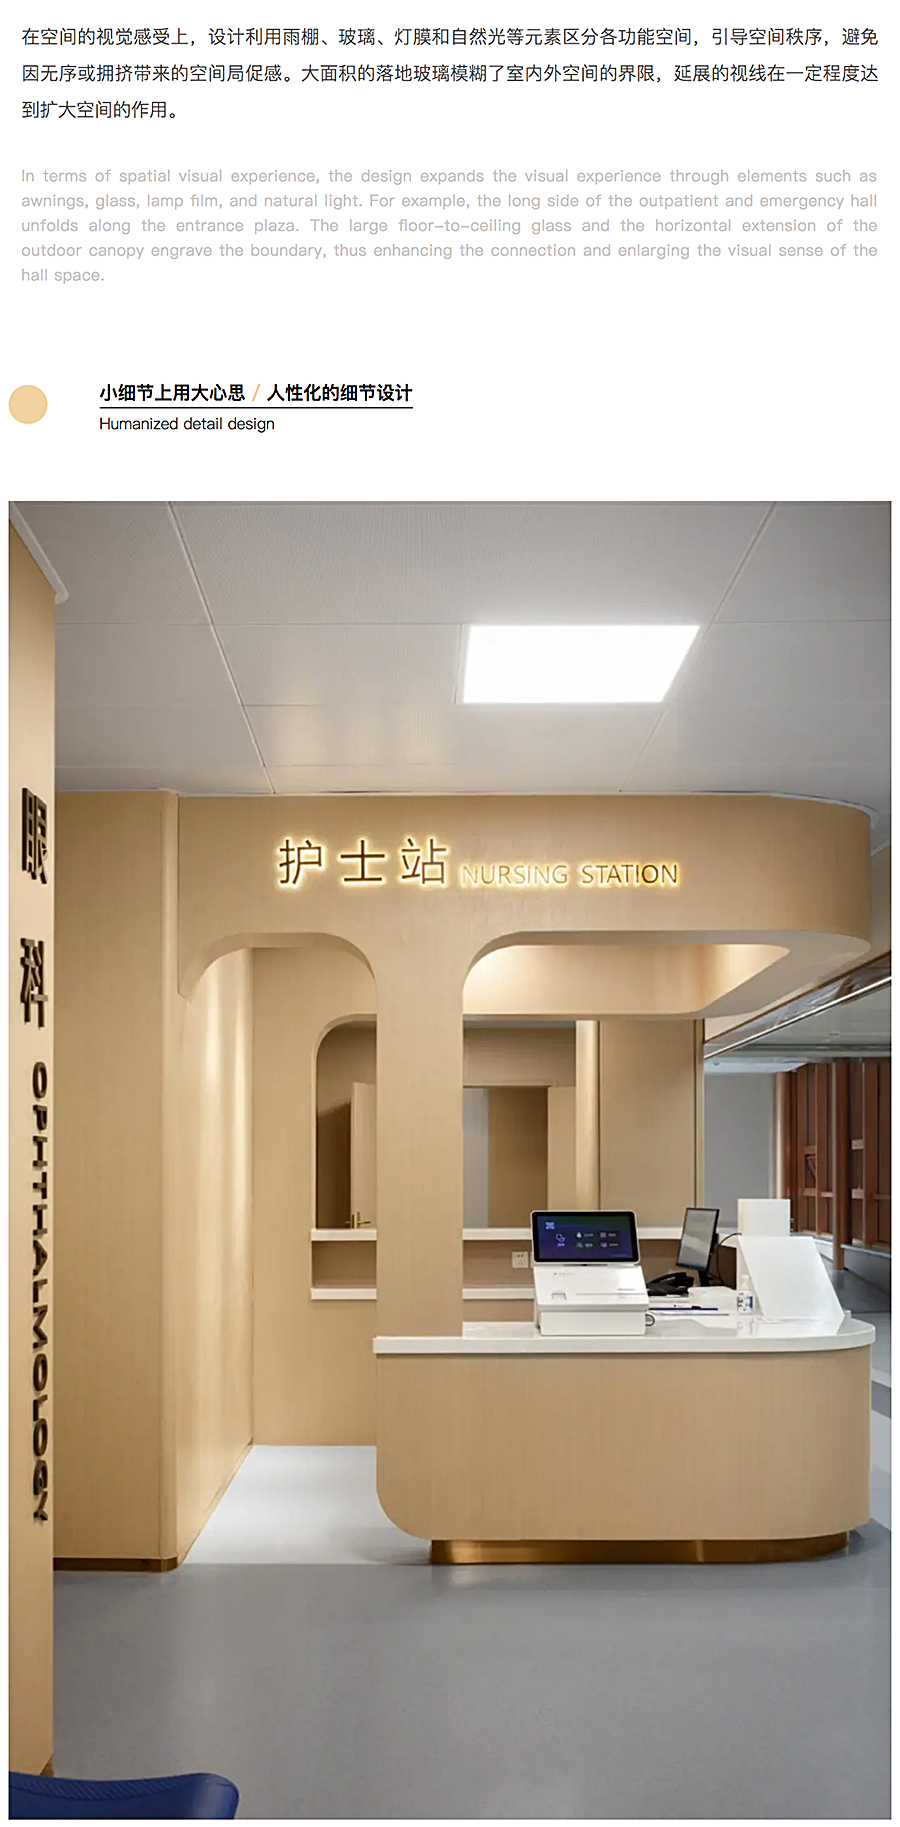 ⽆微不⾄，精益化思维下的上海安达医院⻔急诊改造_0012_图层-13.jpg